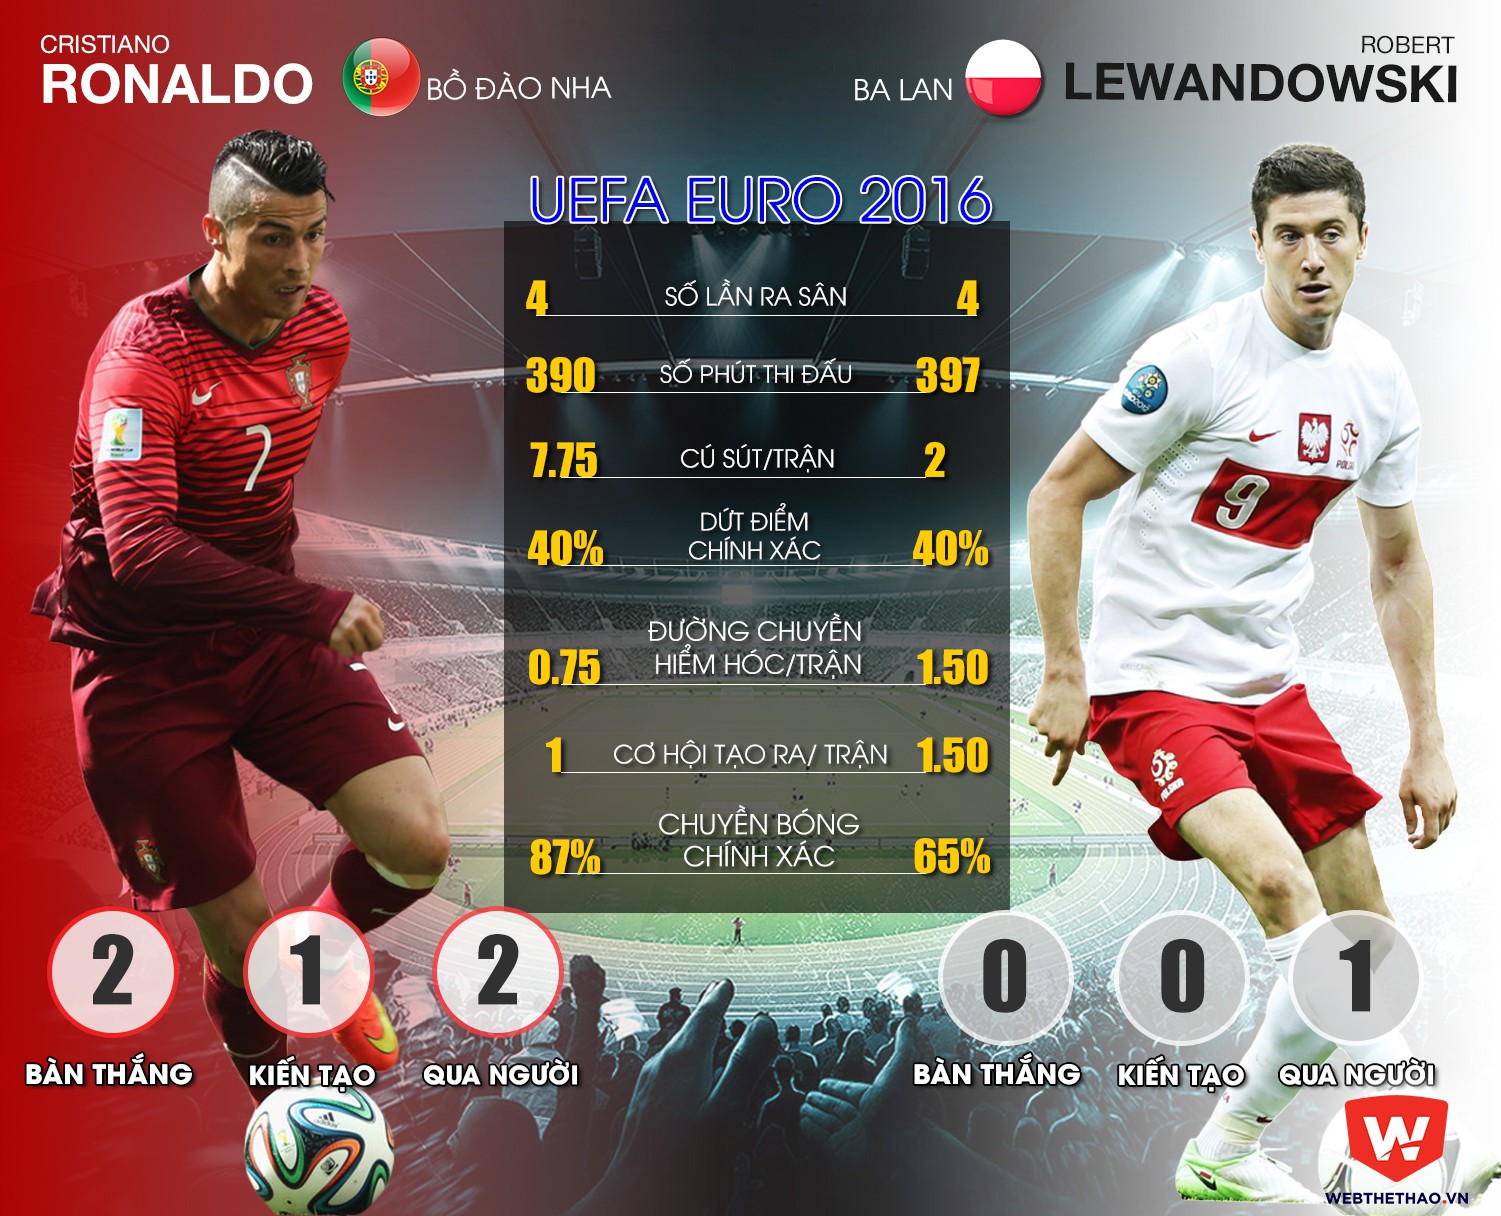 TRỰC TIẾP, Ba Lan-Bồ Đào Nha: Ronaldo nhiều tài with the Lewandowski